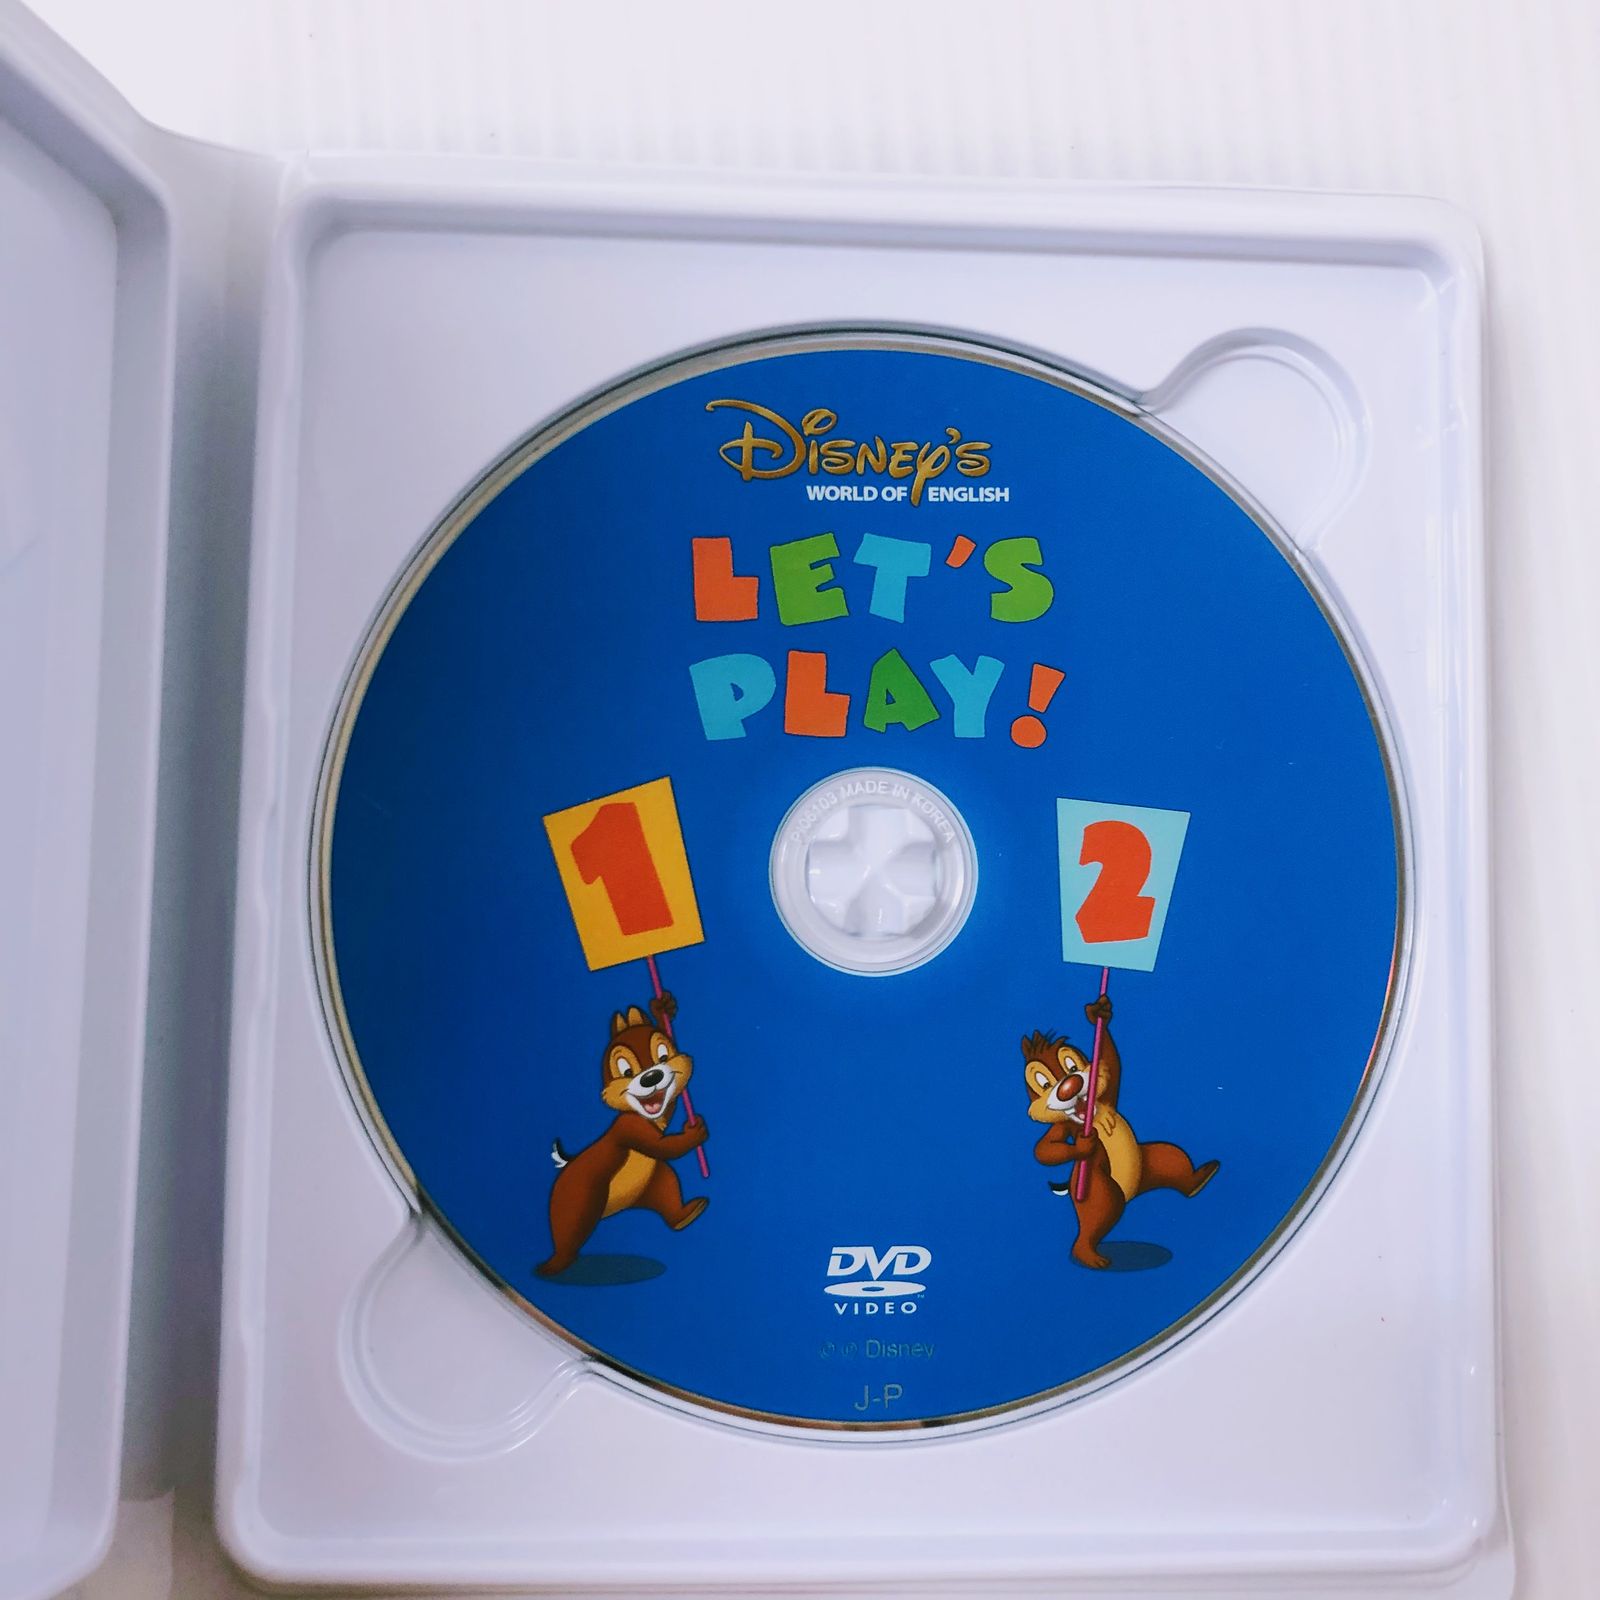 ディズニー英語システム レッツプレイ DVD プレビュー機能有 2017年 未 